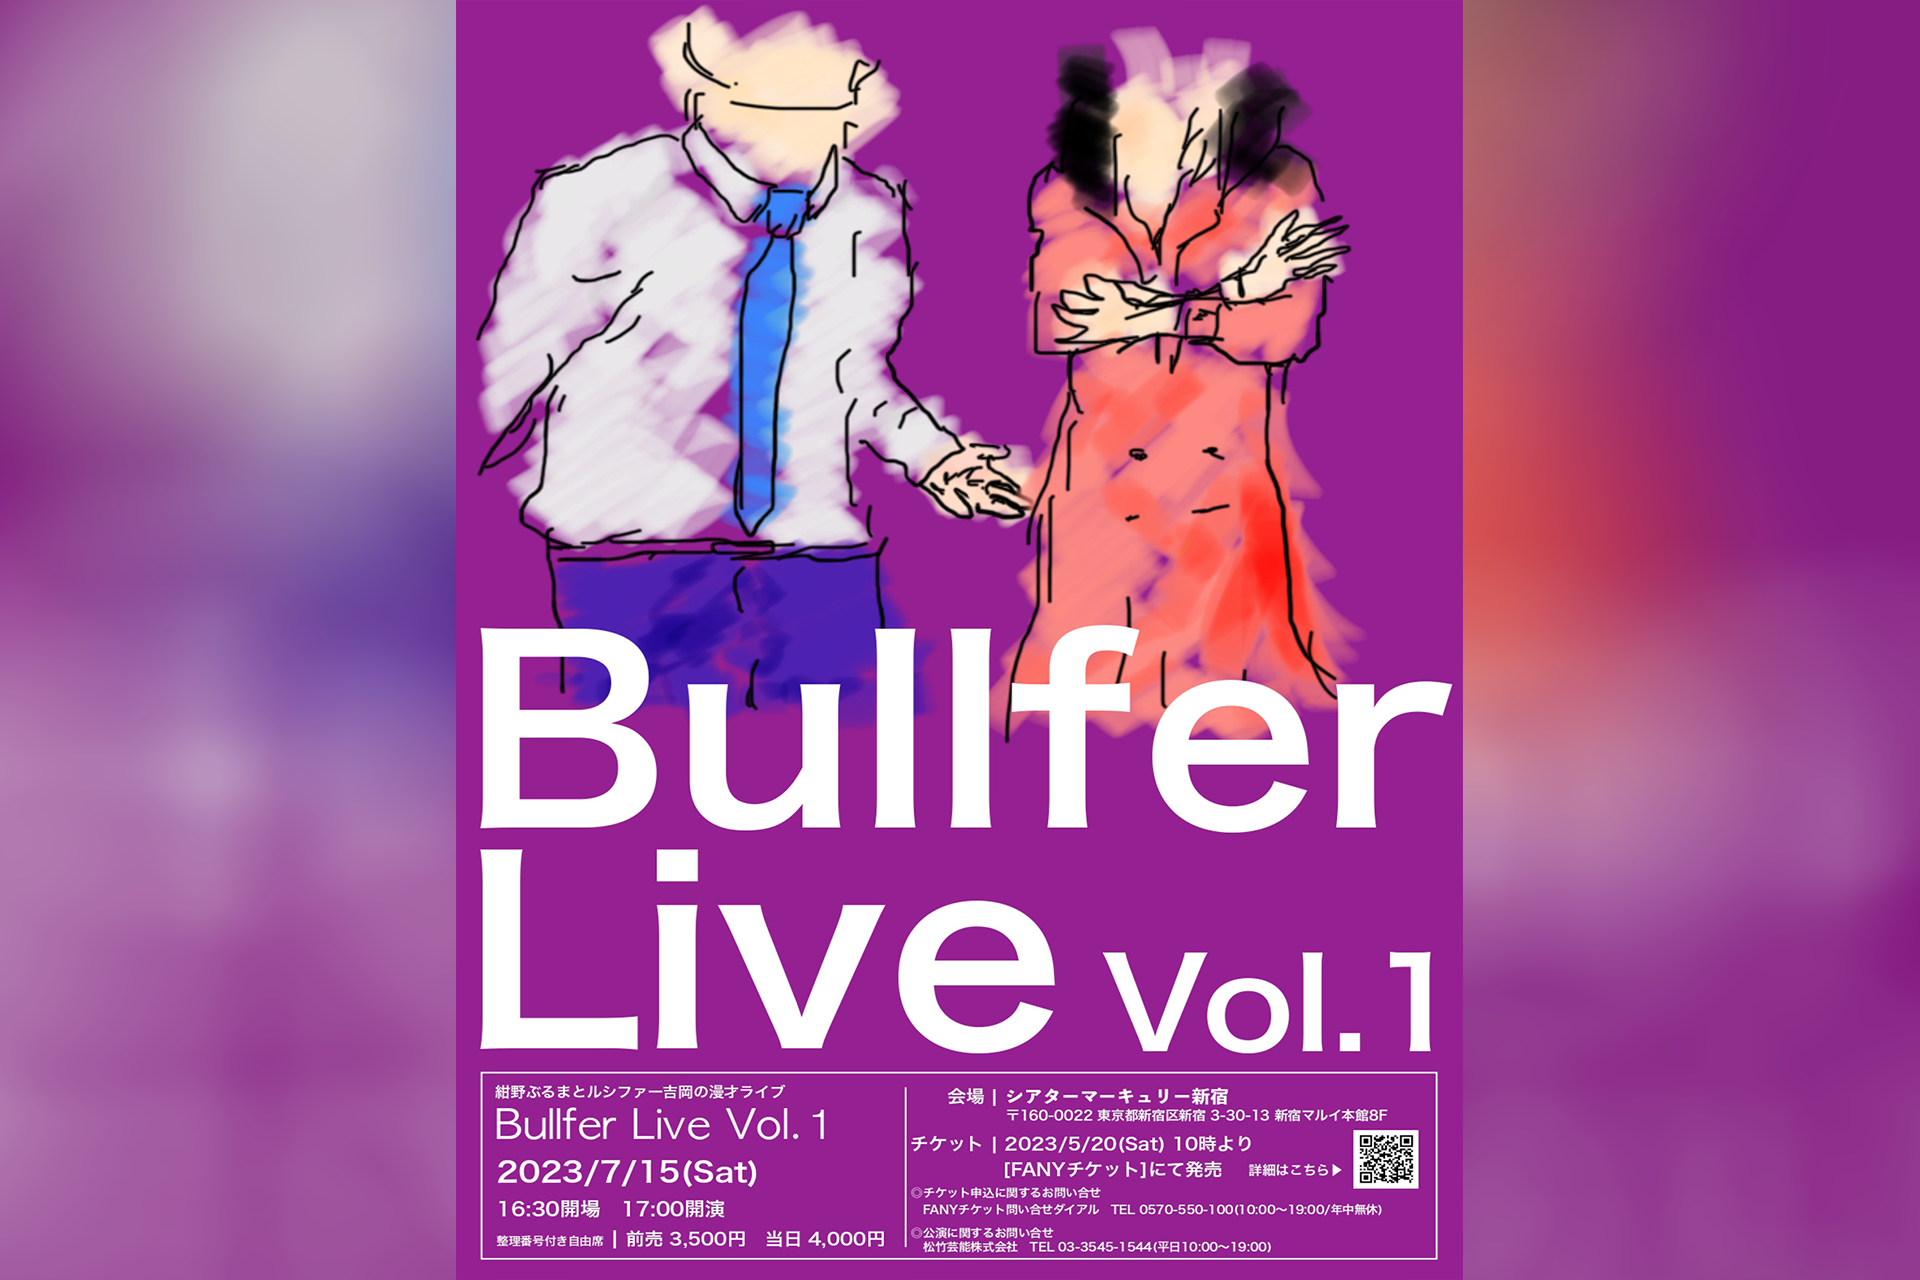 紺野ぶるまとルシファー吉岡の漫才ライブ「Bullfer Live Vol.1」